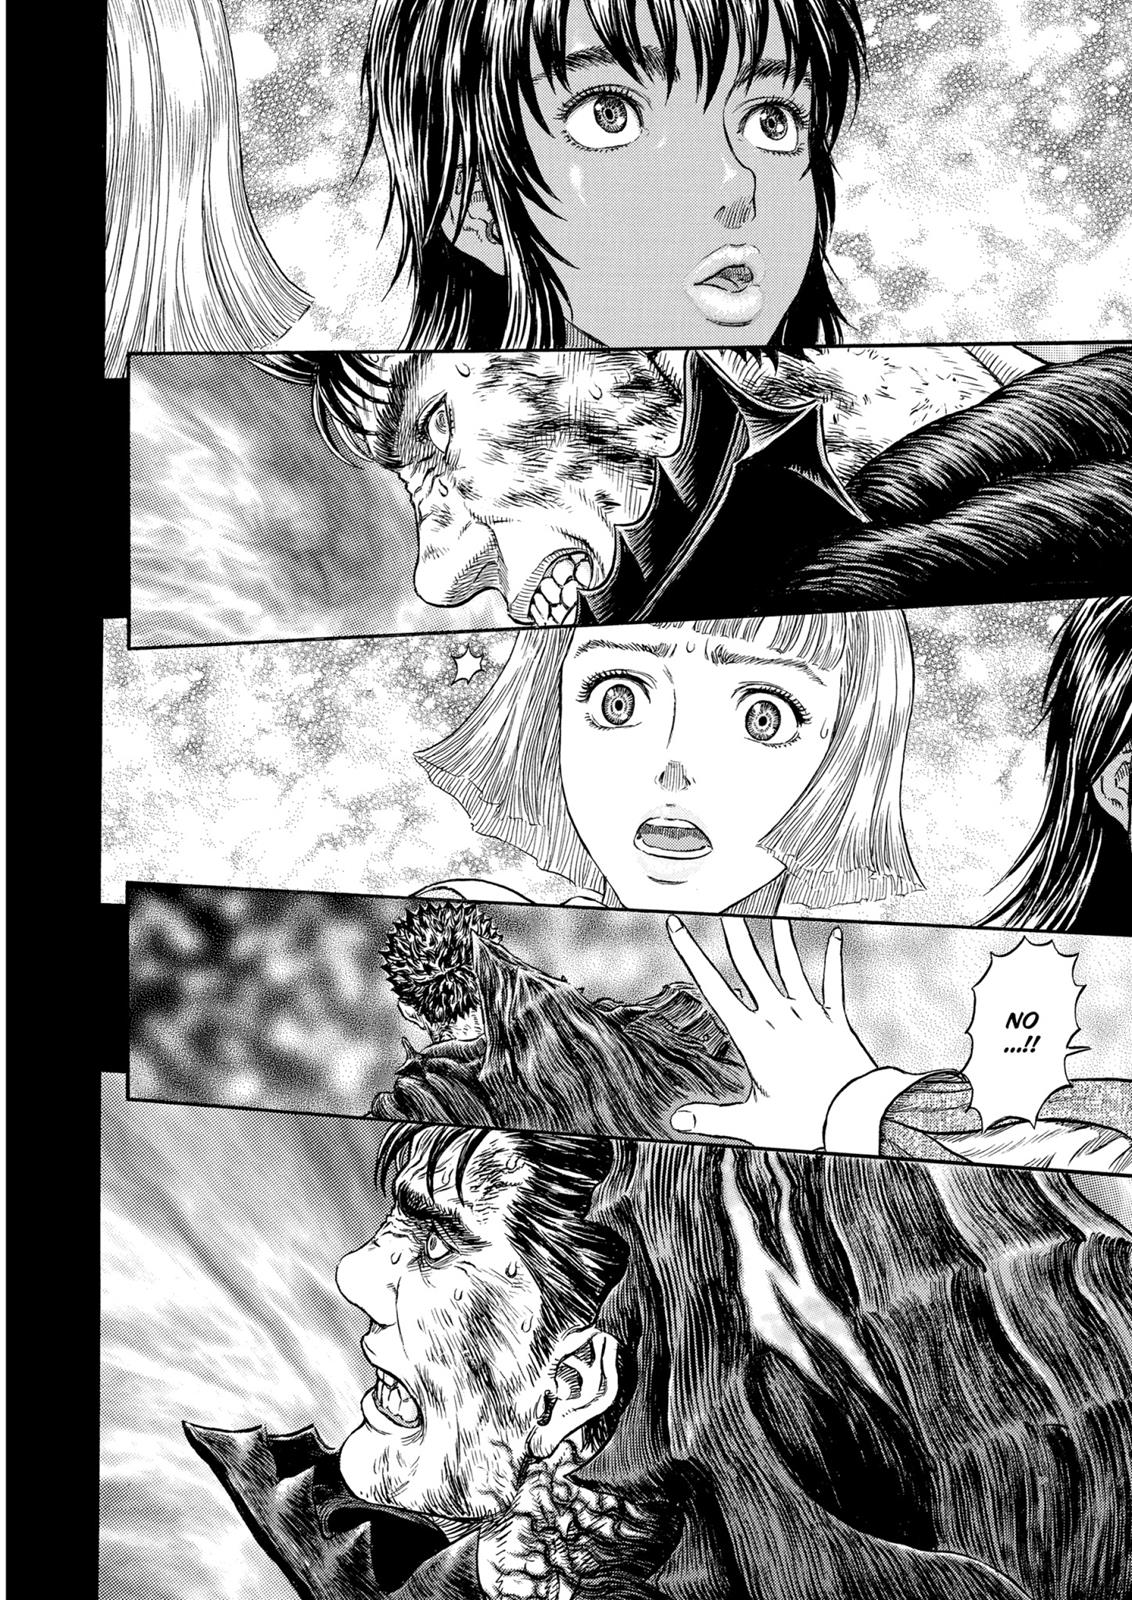 Berserk Manga Chapter 315 image 09